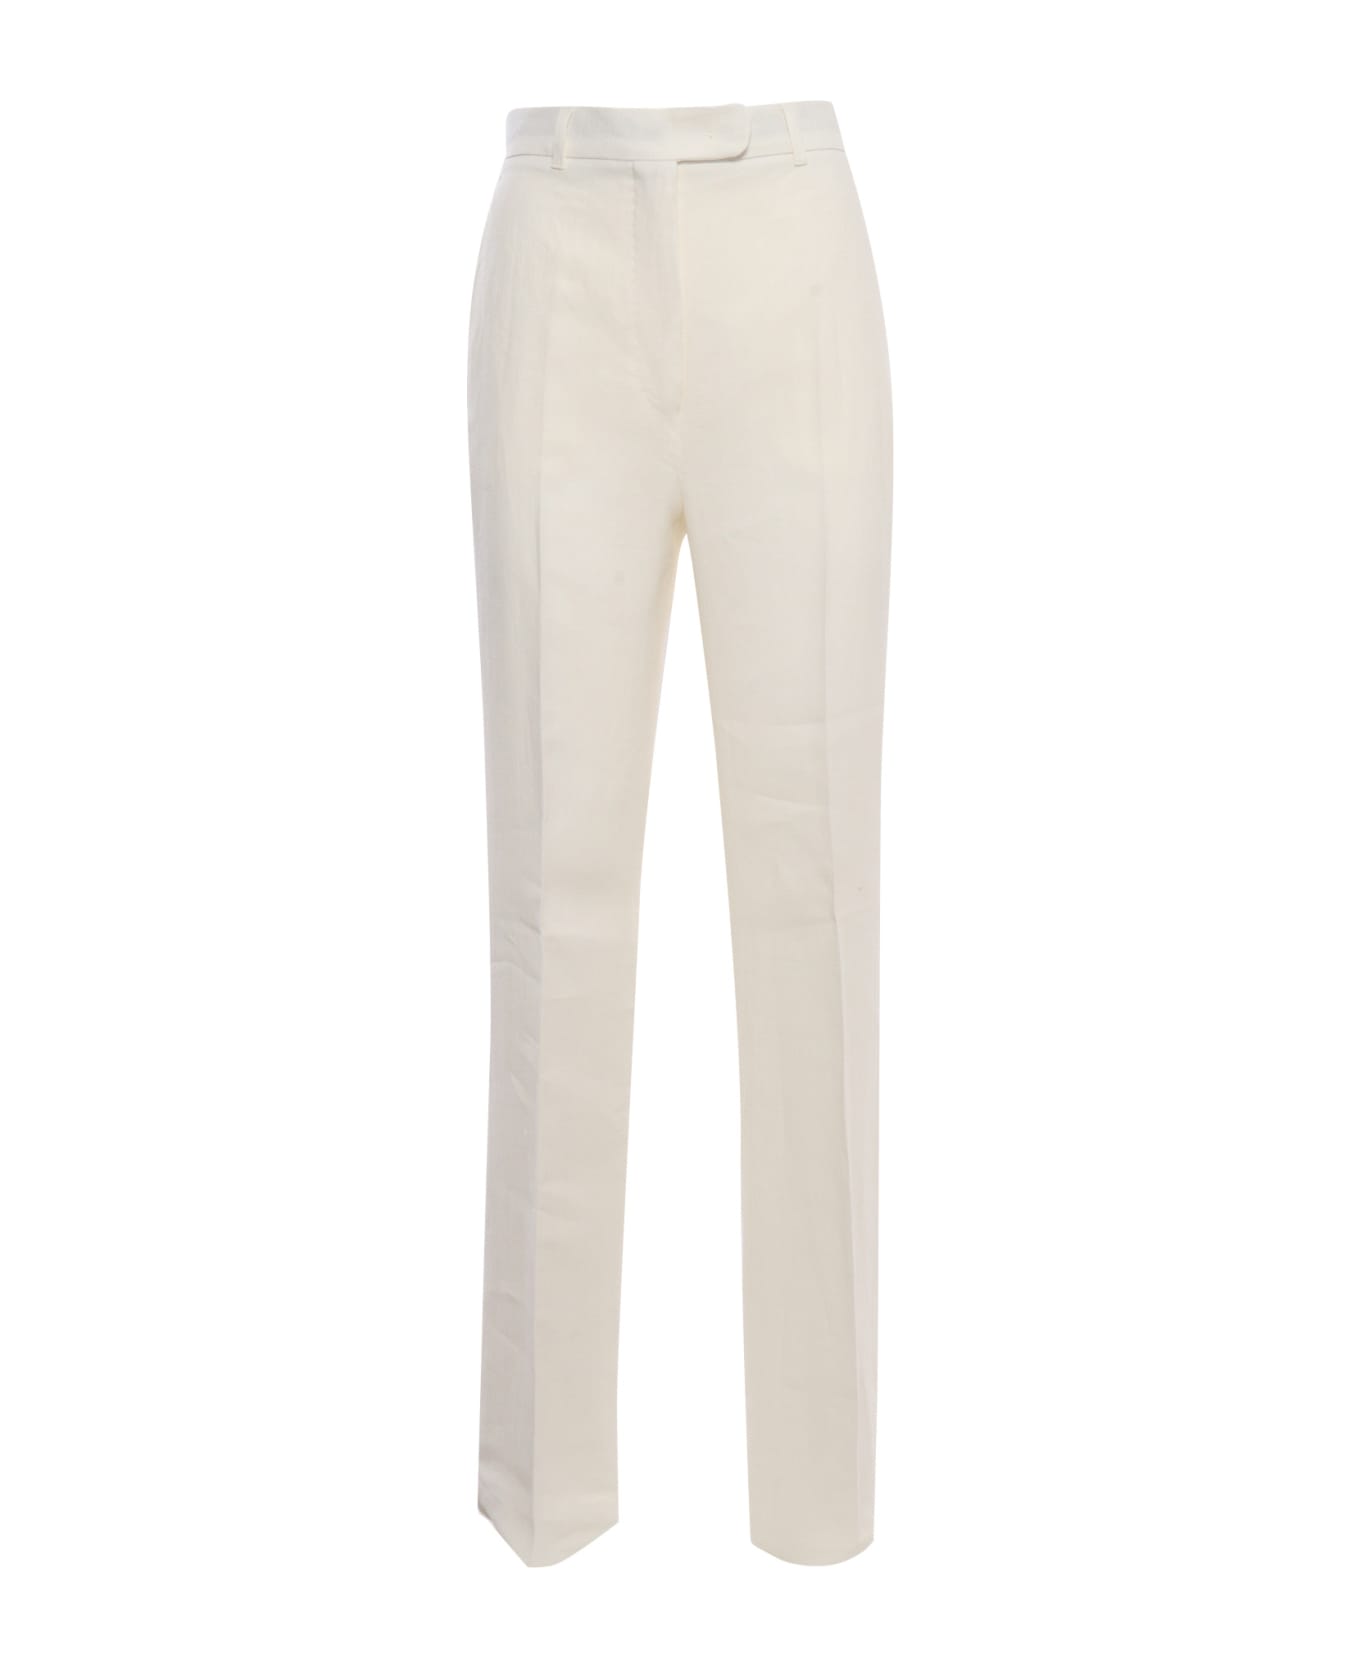 Max Mara Studio Alcano White Trousers - WHITE